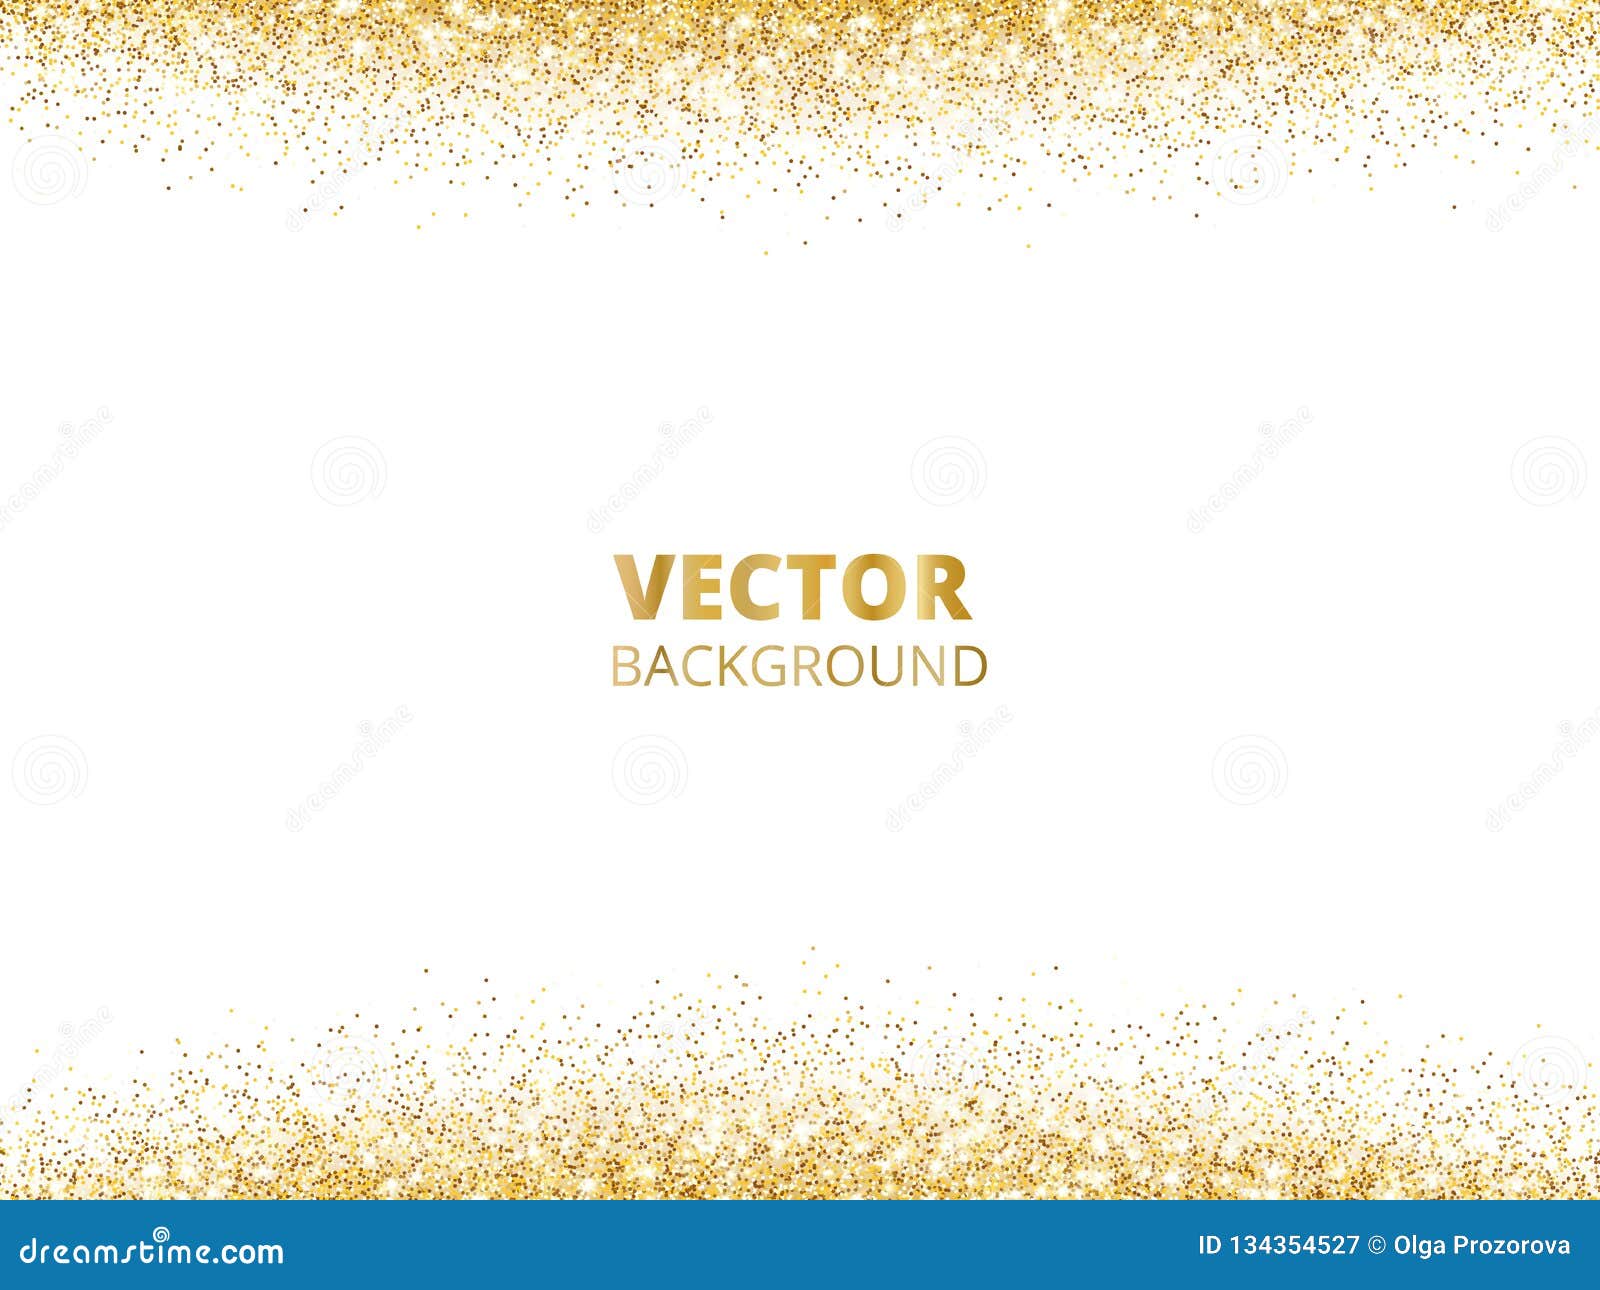 sparkling glitter border, frame. falling golden dust  on white background.  gold glittering decoration.